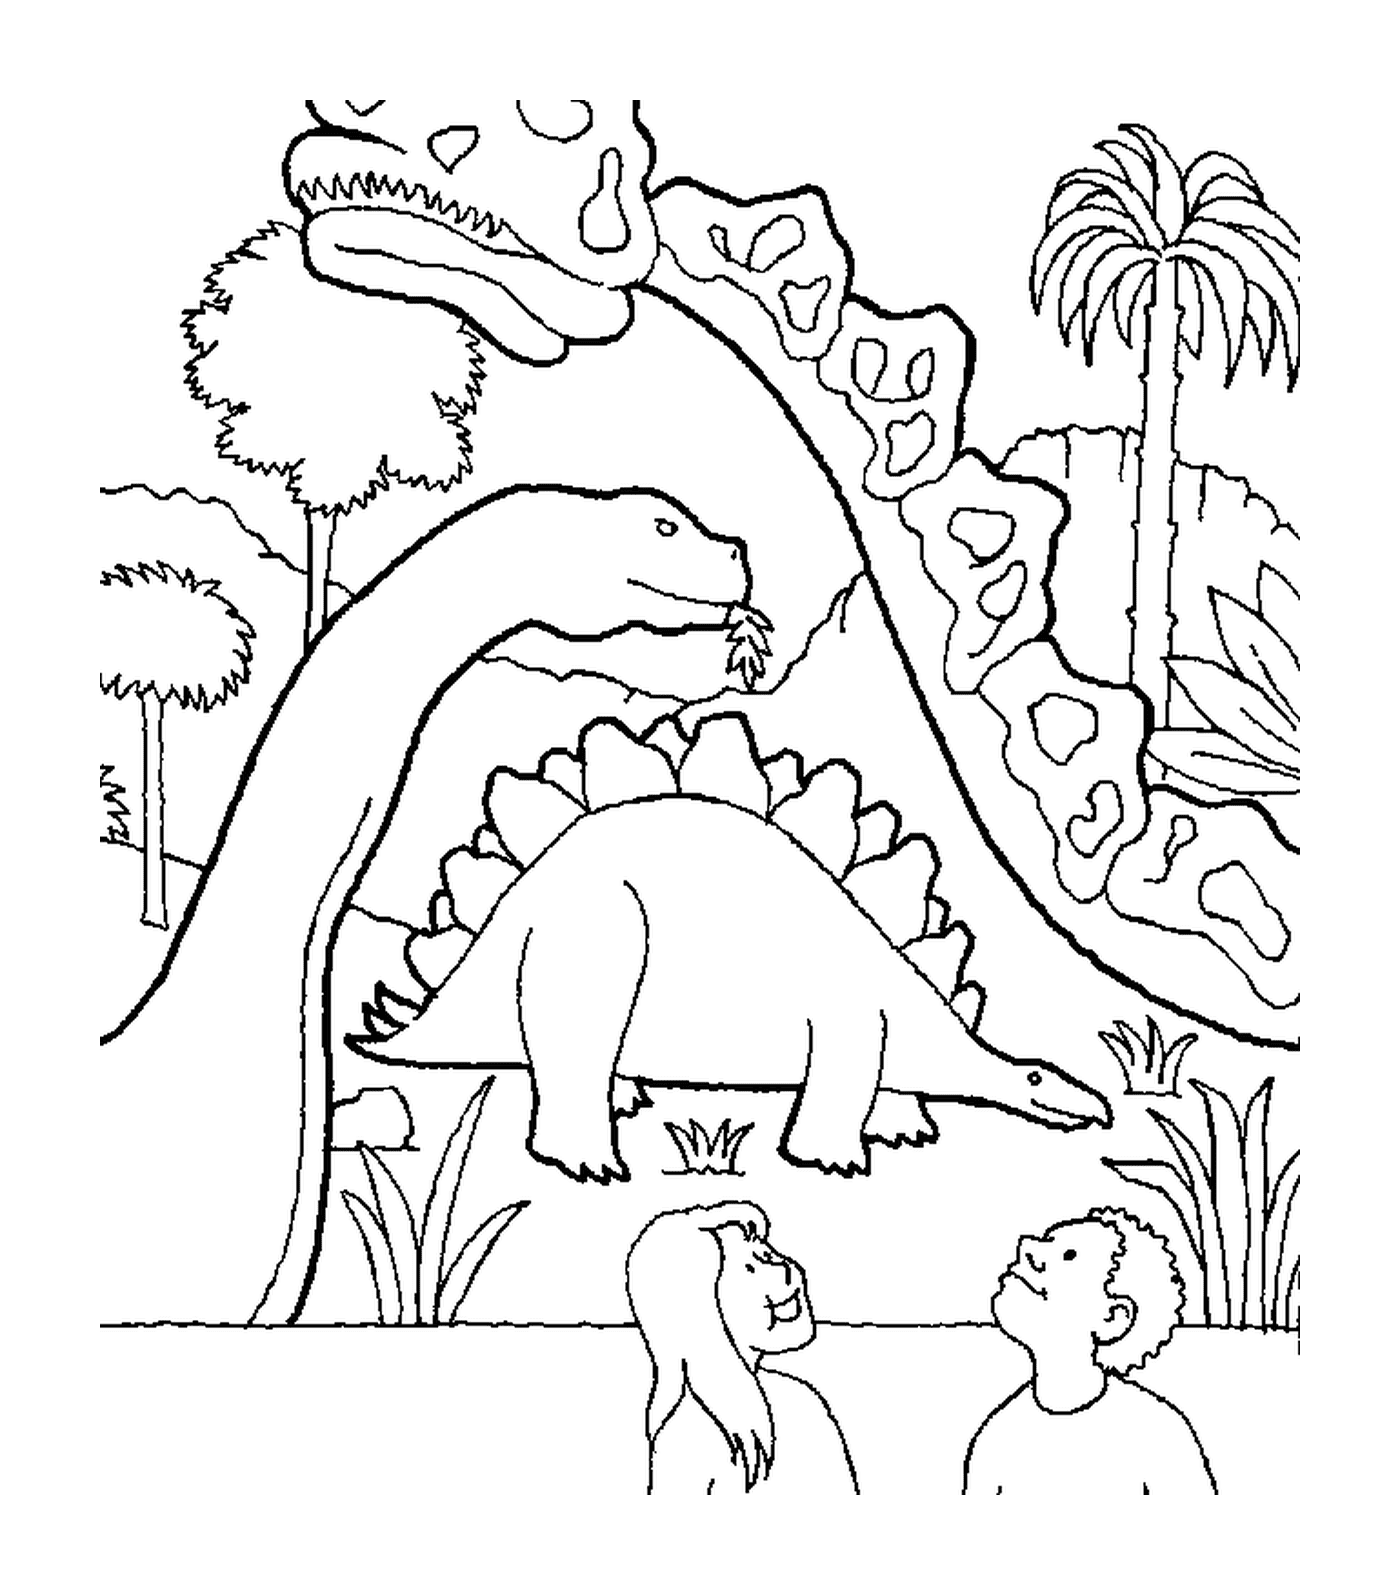   Dinosaure entouré de deux autres dinosaures 